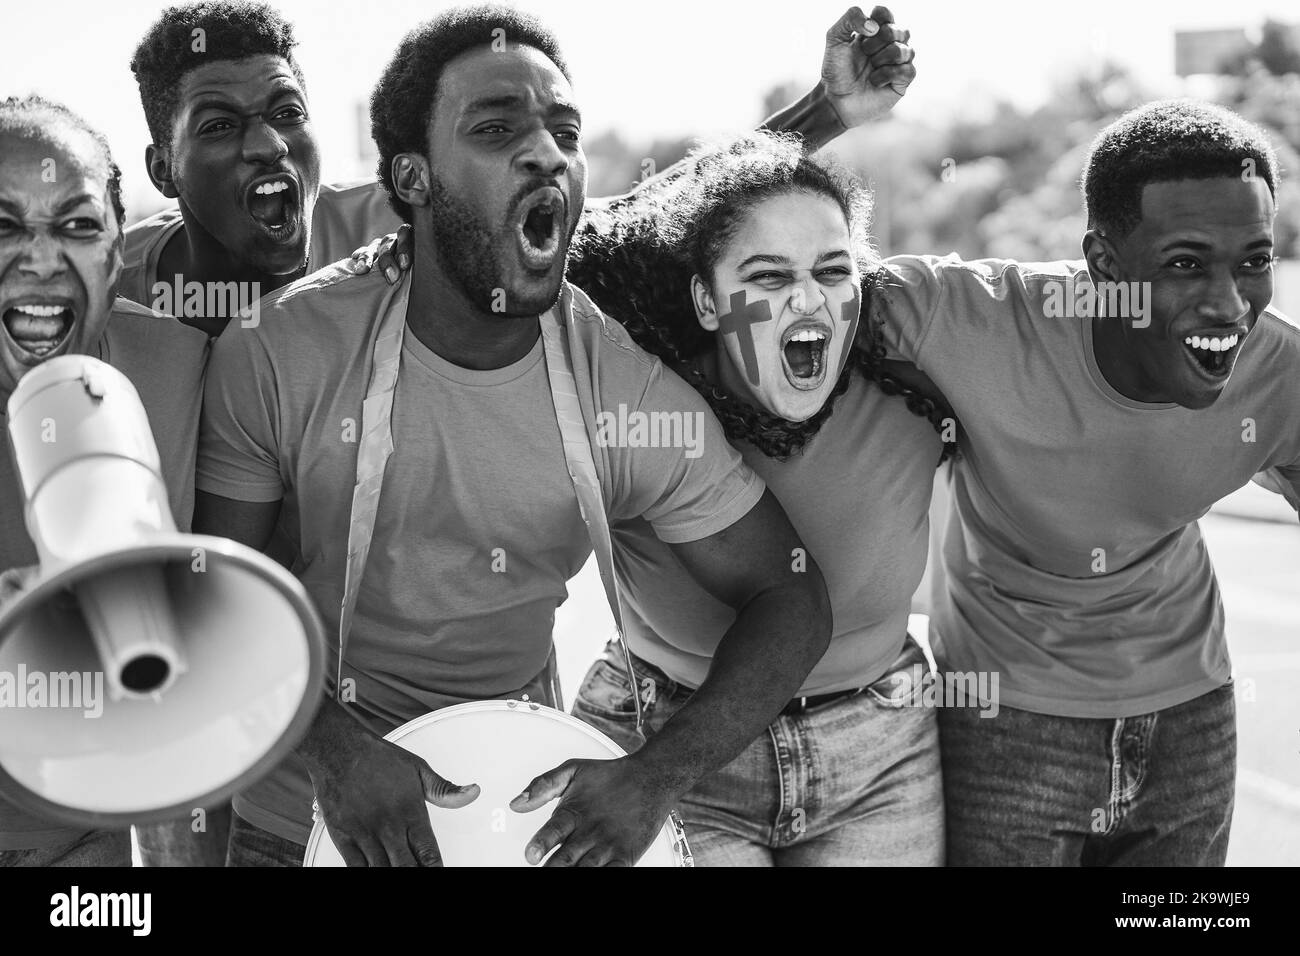 Les fans de sport africains crient tout en soutenant leur équipe - les supporters de football s'amusent lors d'un événement de compétition - montage noir et blanc Banque D'Images